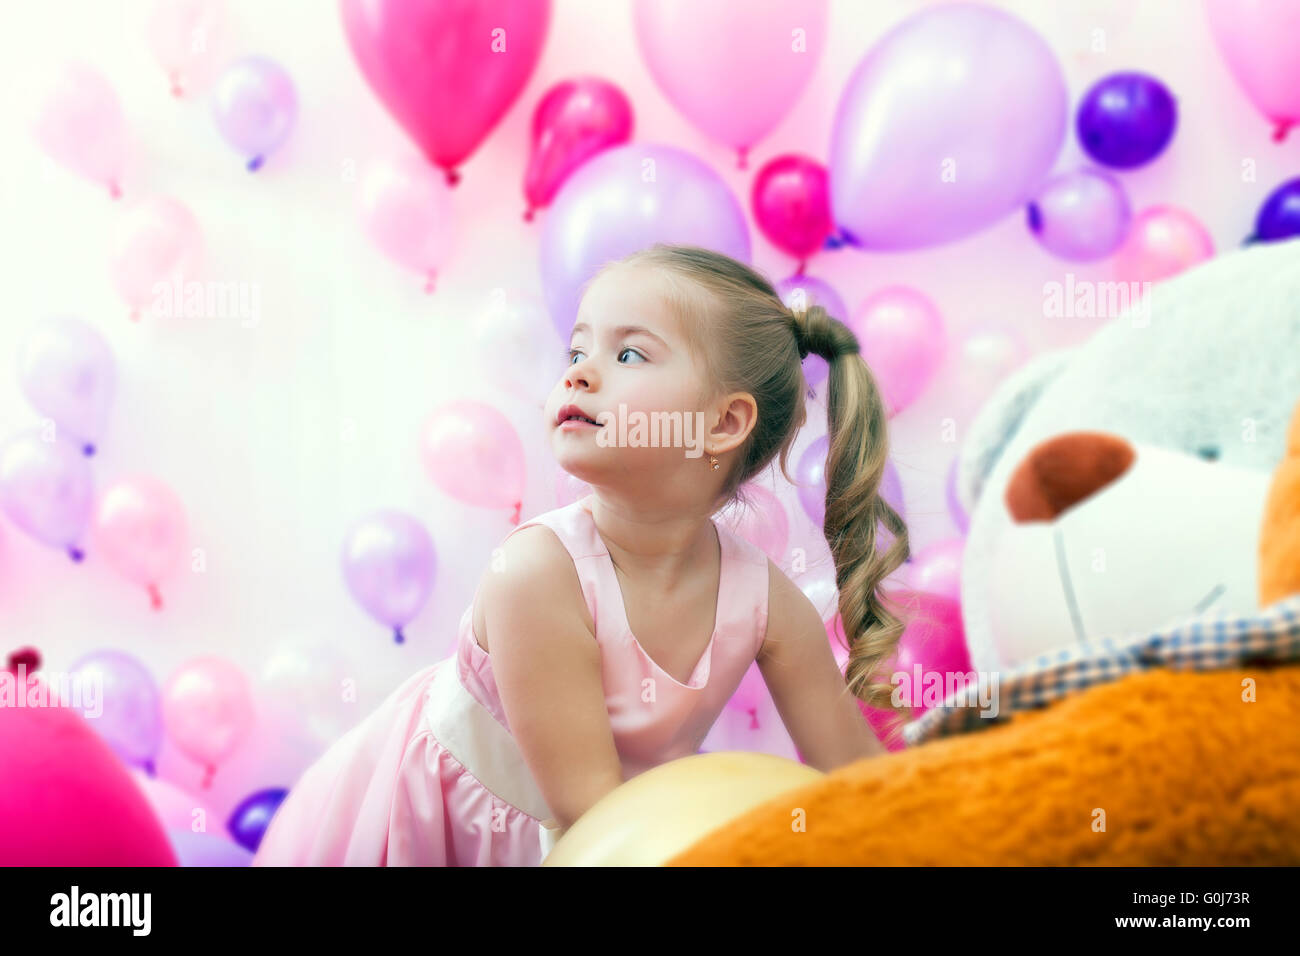 Jolie petite dame posant sur fond de ballons Banque D'Images